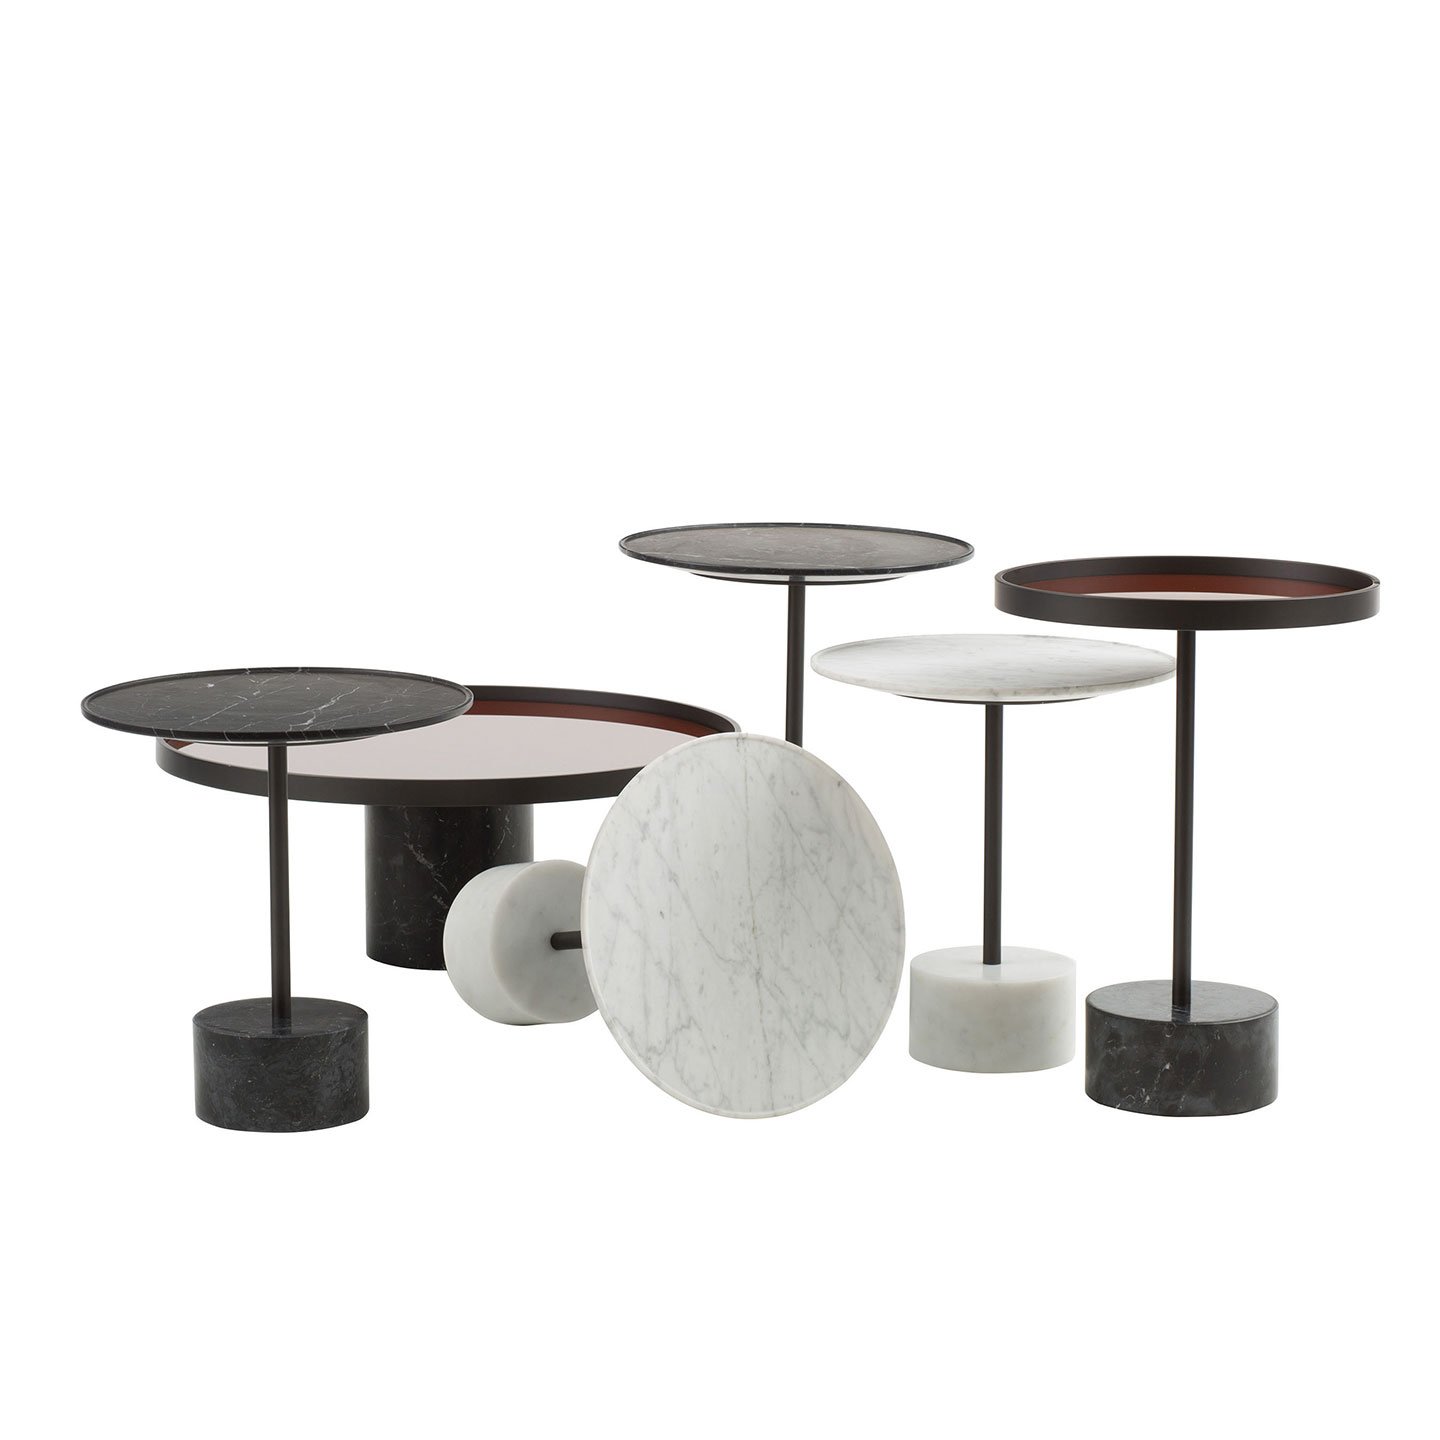 Haworth 9 table with circular base and circular top